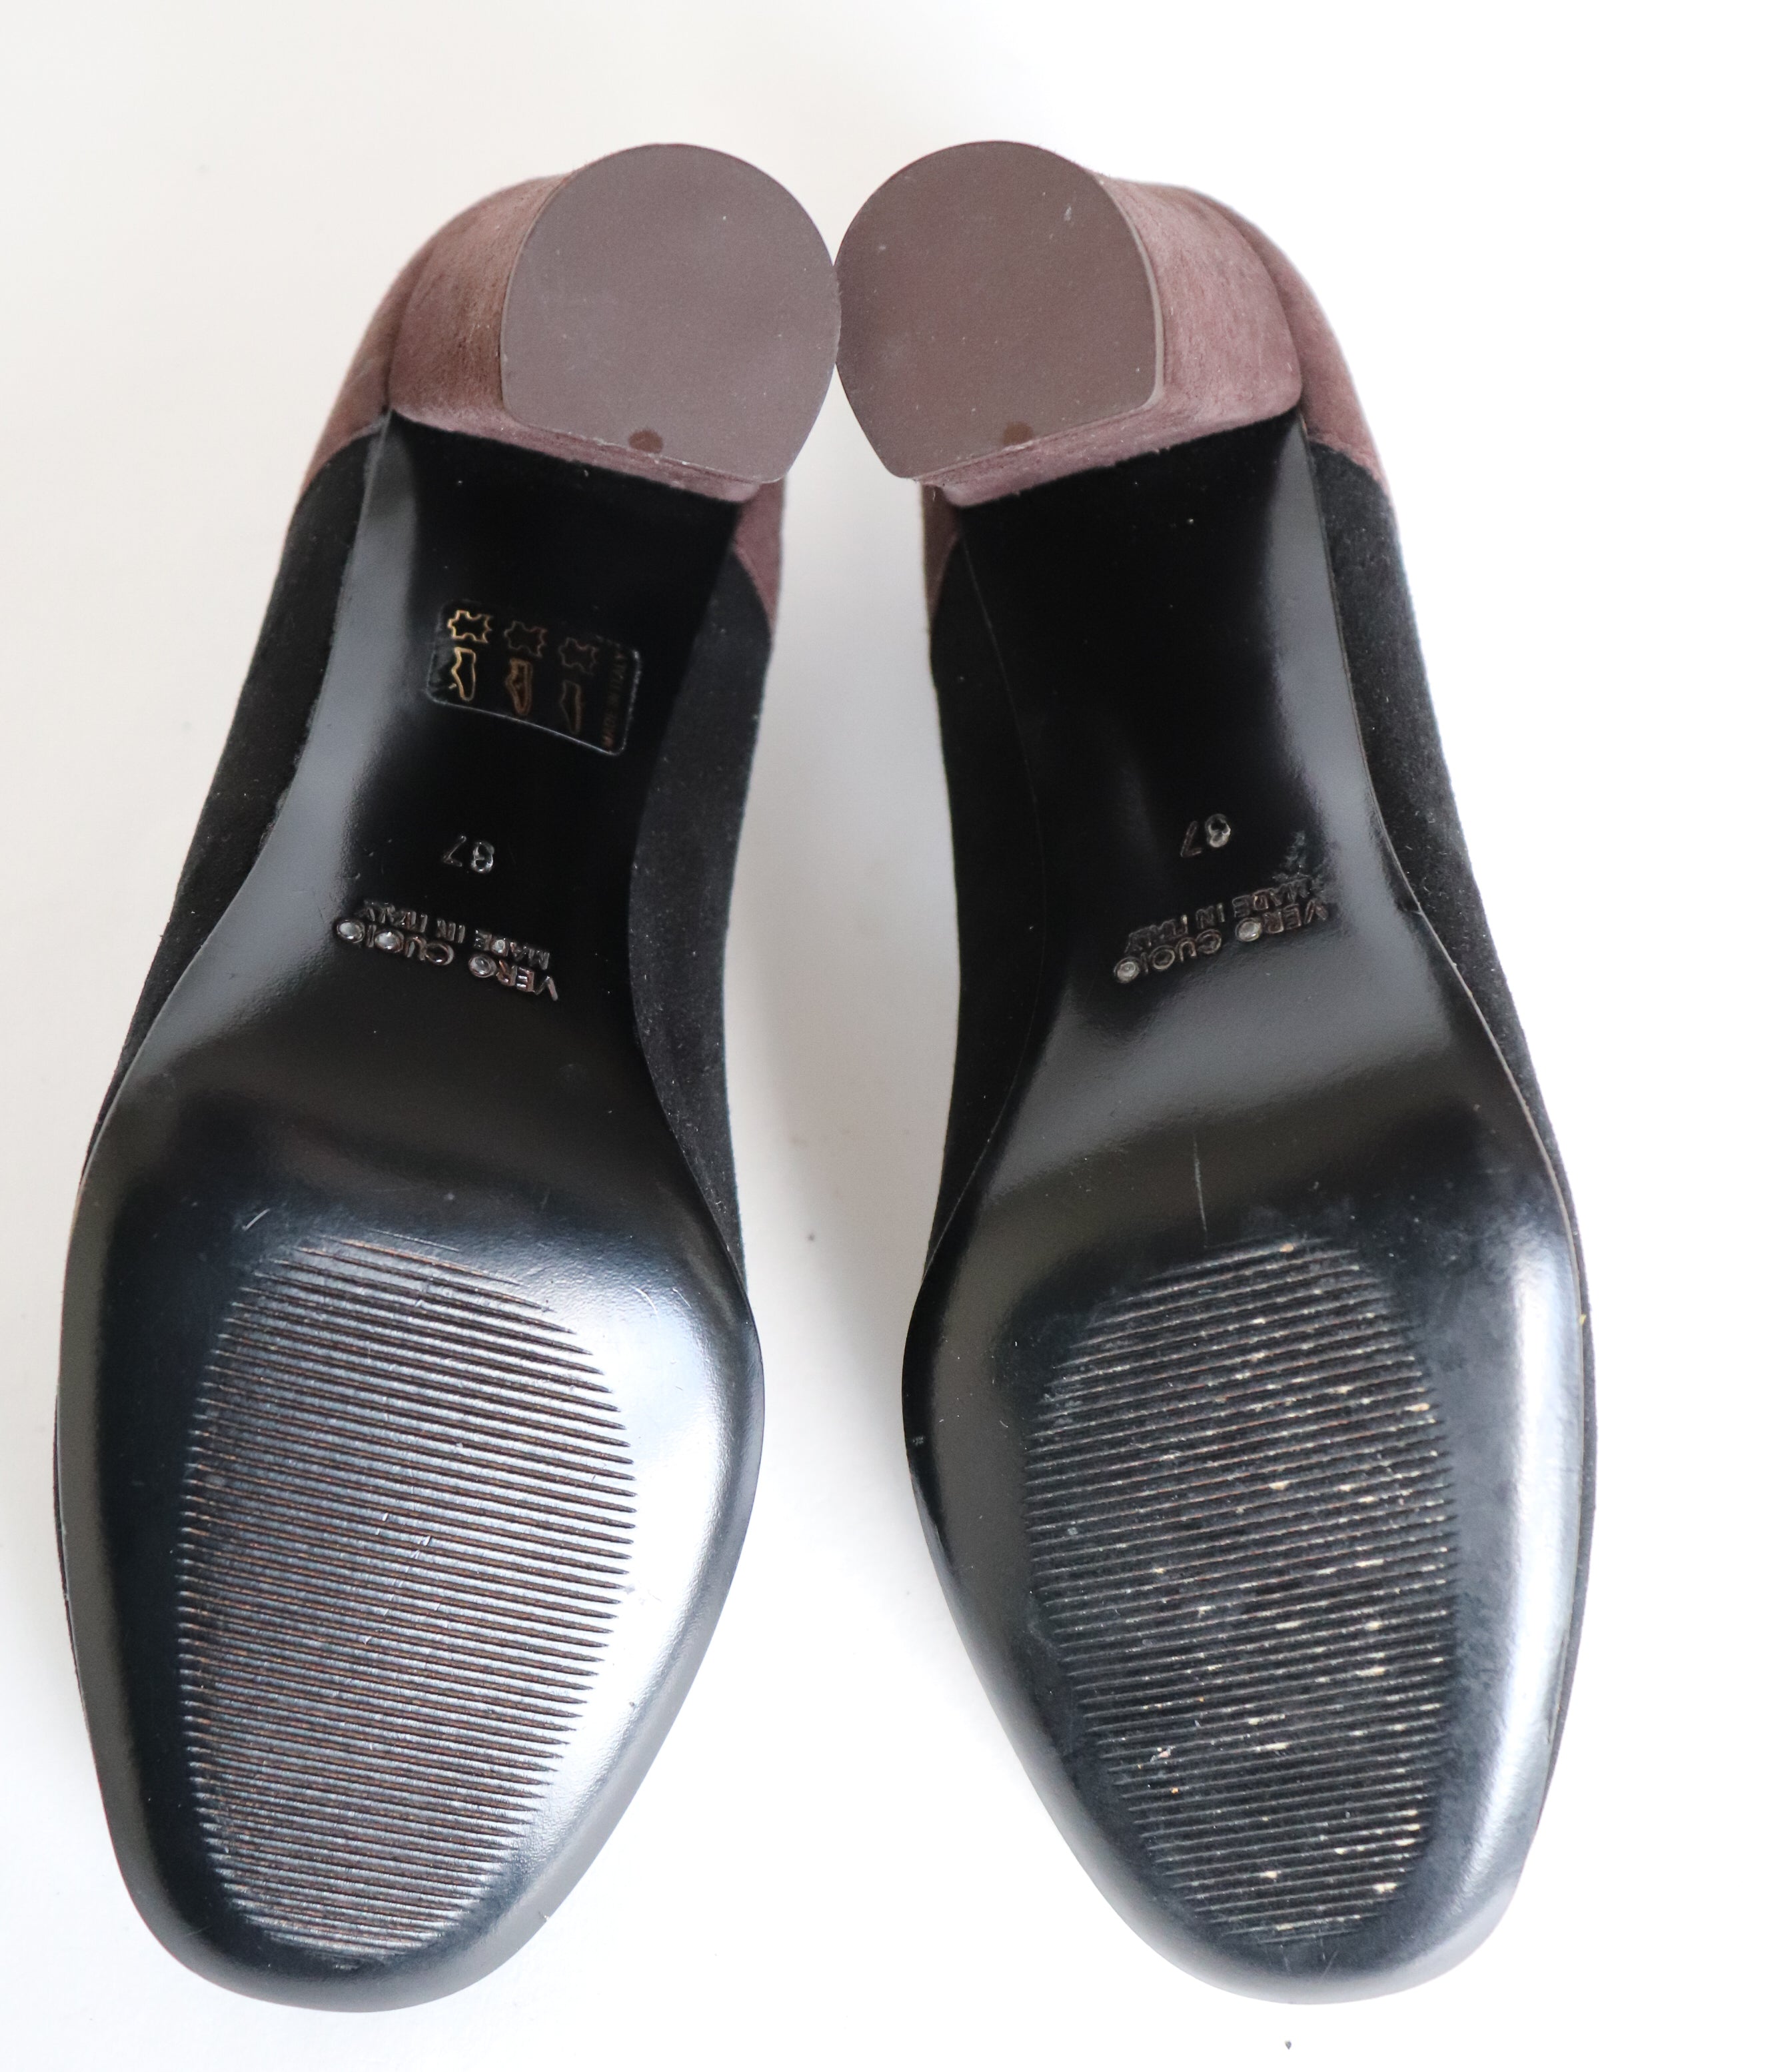 Mary-Jane Shoes - Block Heel - Black / Brown Suede - GUJA - UK 4 / 37